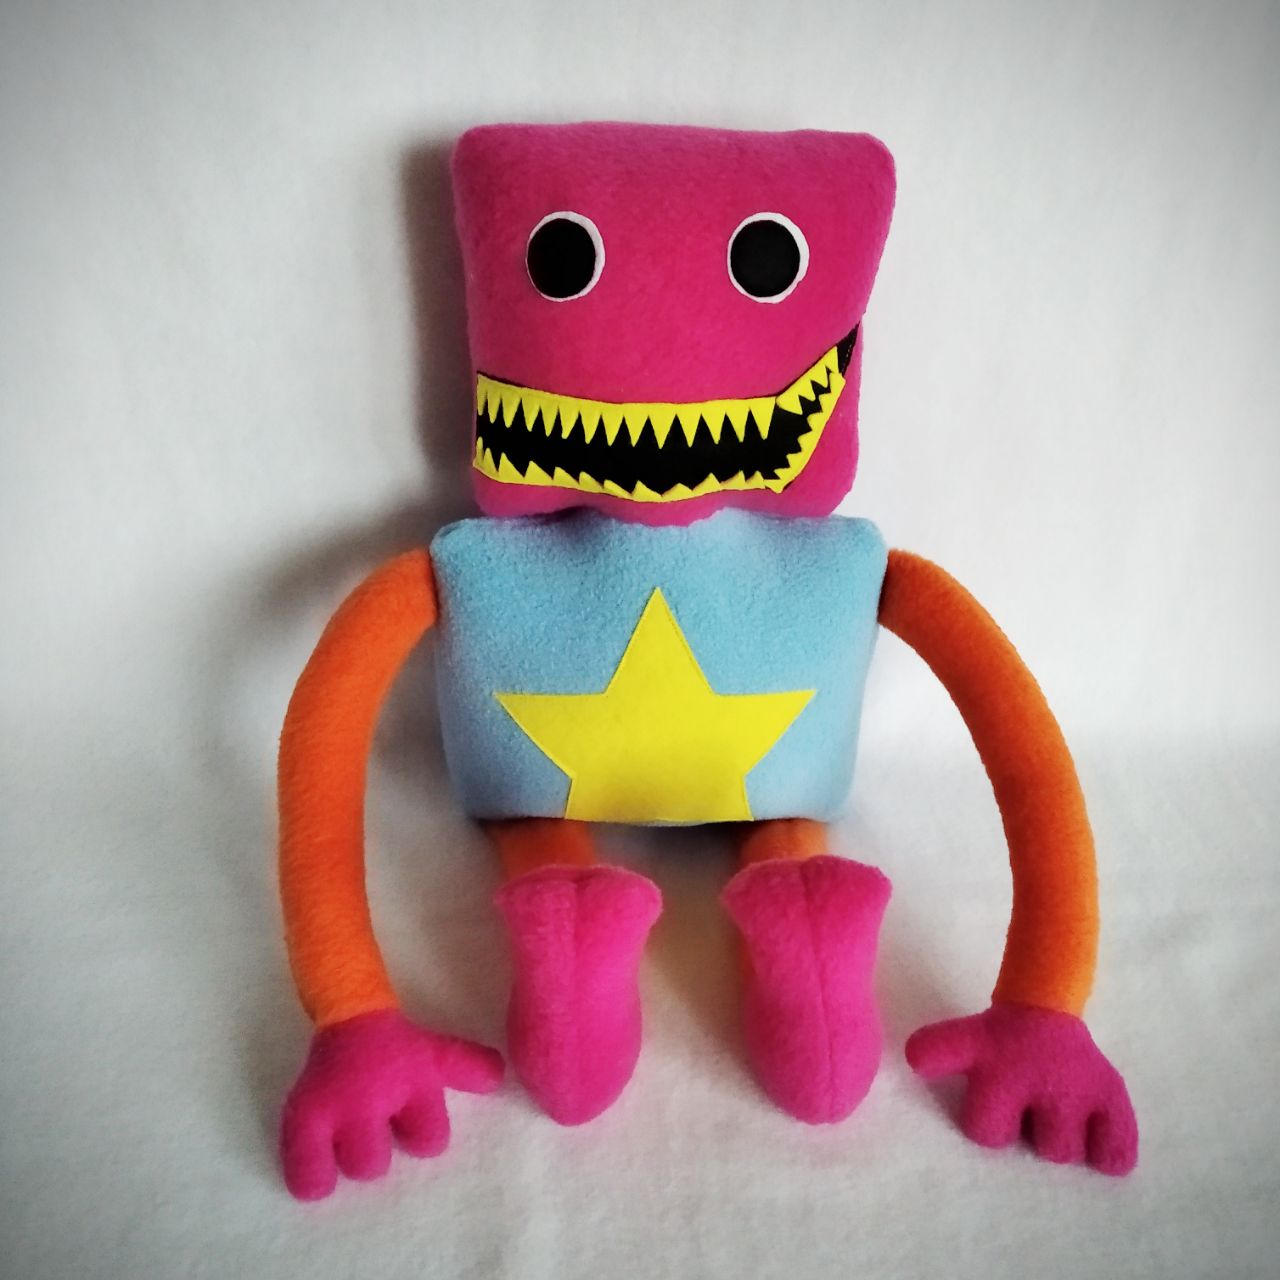 Novos Jogos De Moda Boxy Boo Toy Poppy Playtime Brinquedos Em